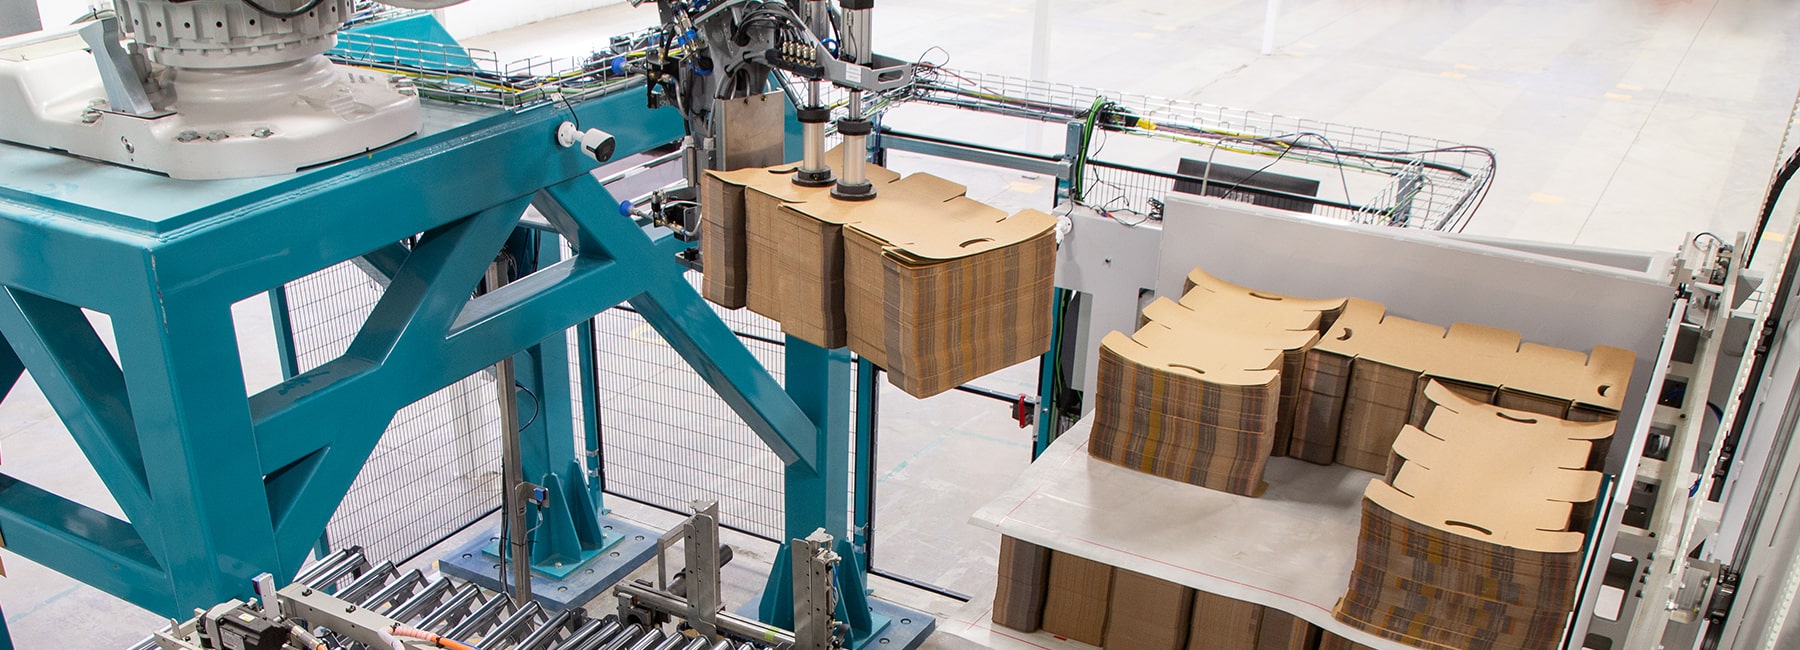 robotic depalletizing carton stack